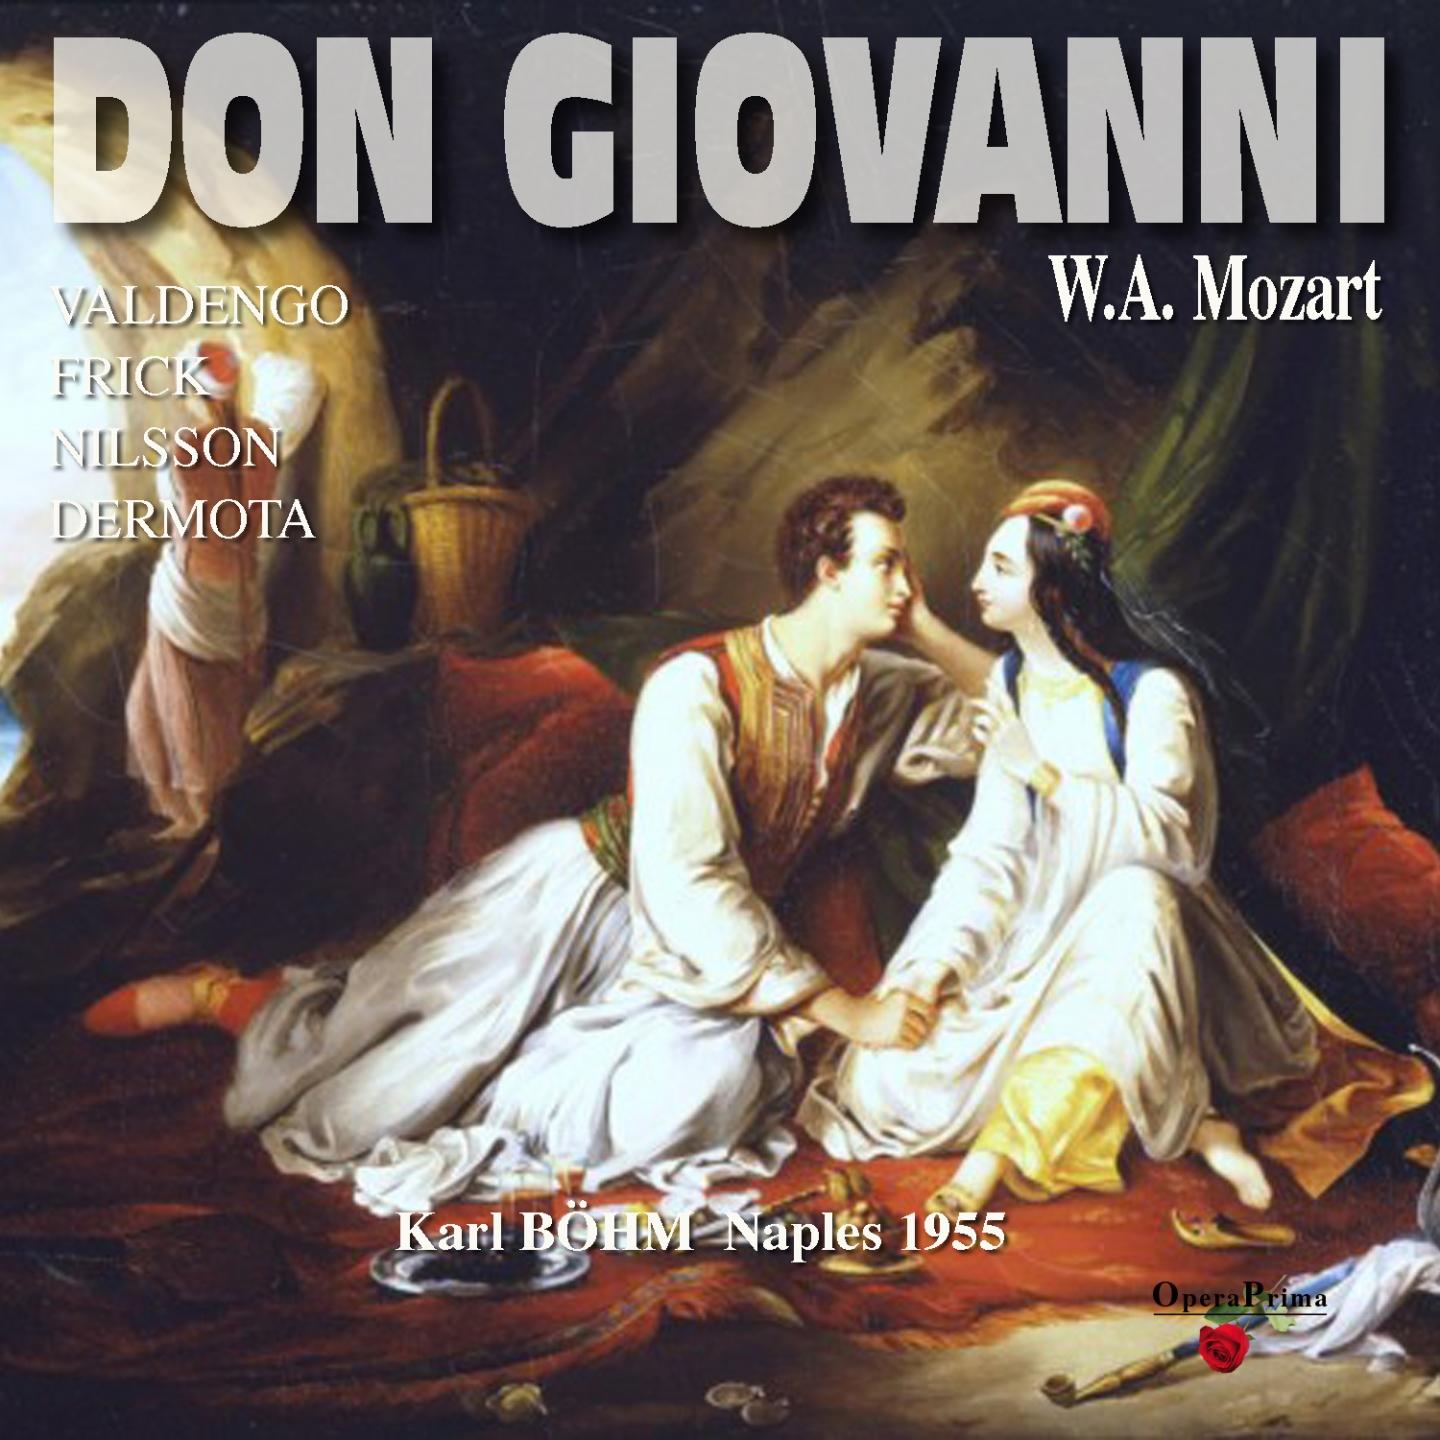 Don Giovanni: Act I - "Deh, non fidare al misero"